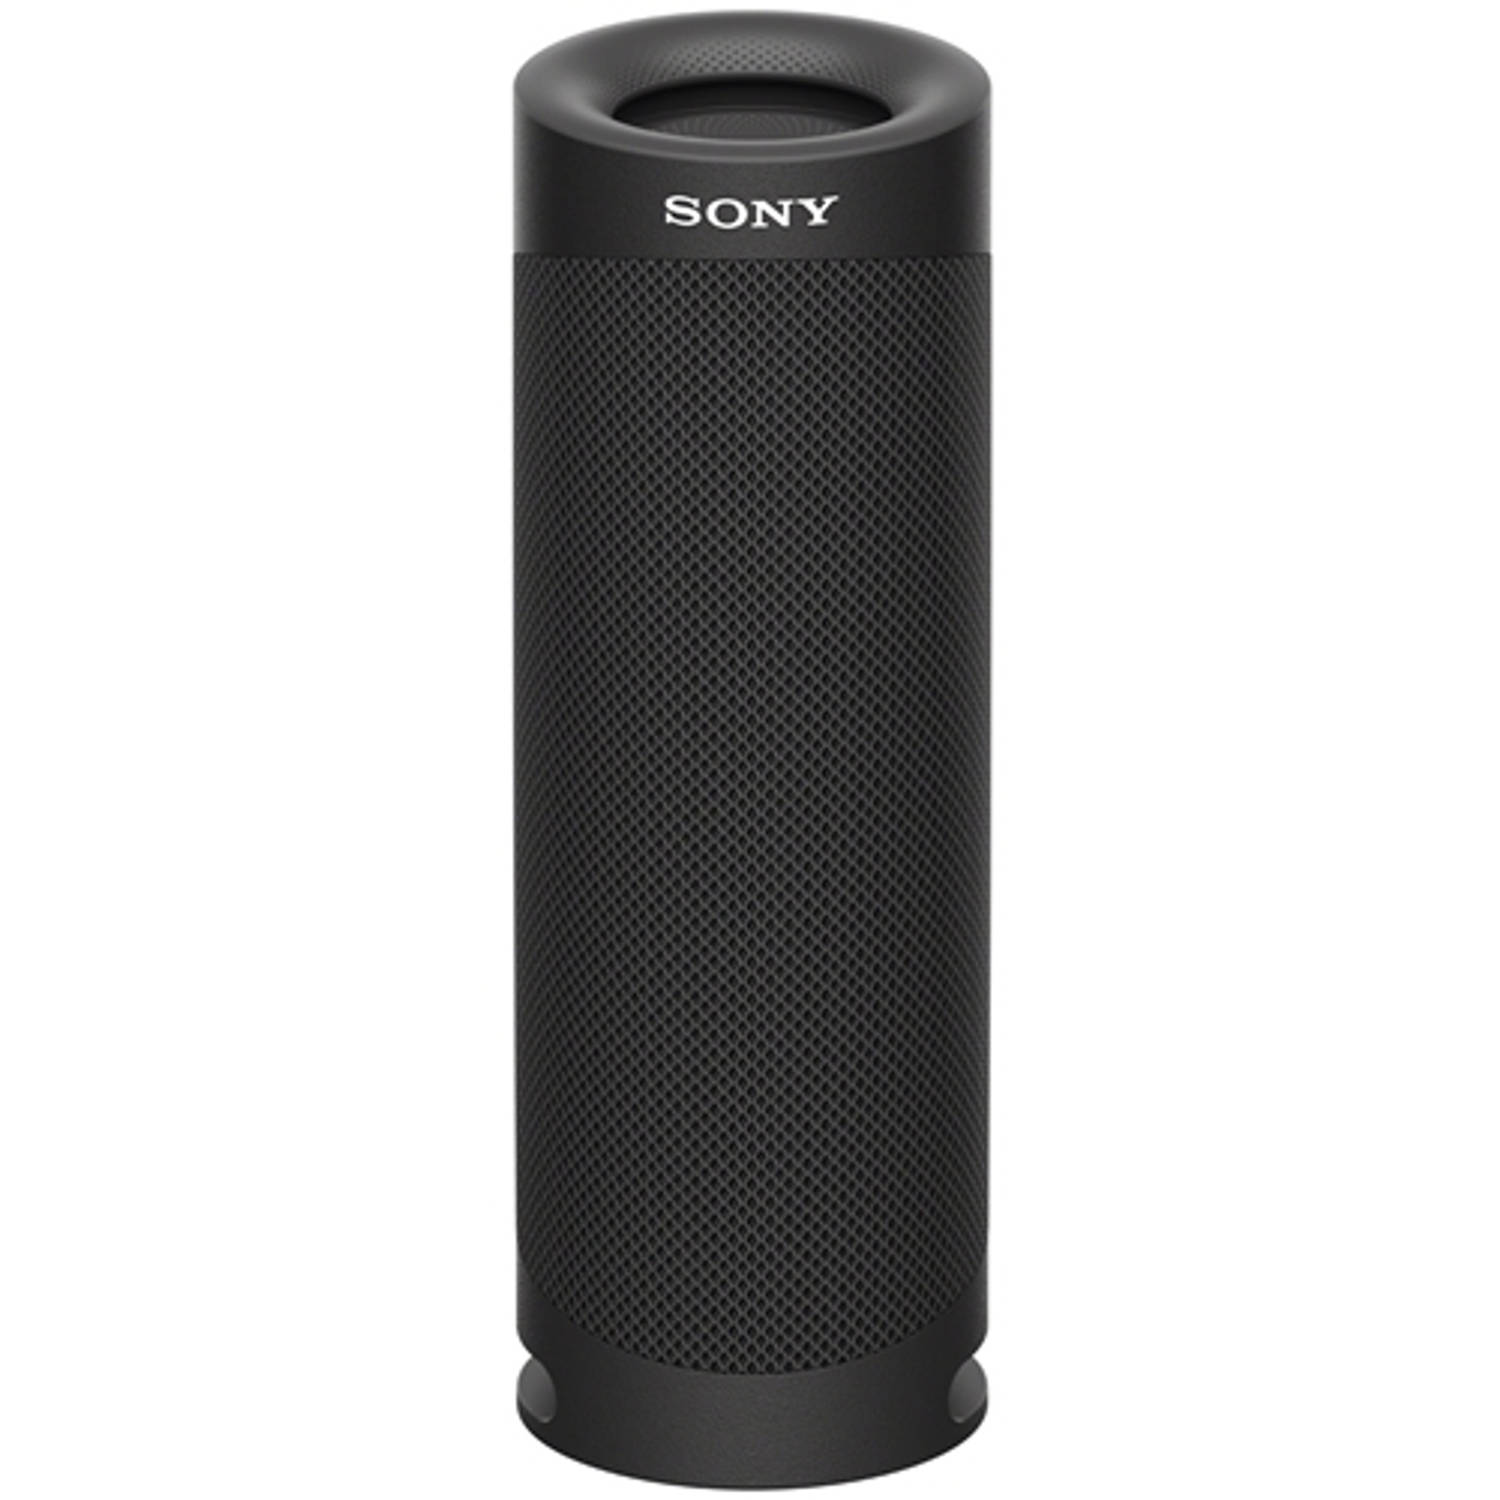 Sony SRS-XB23 Zwart